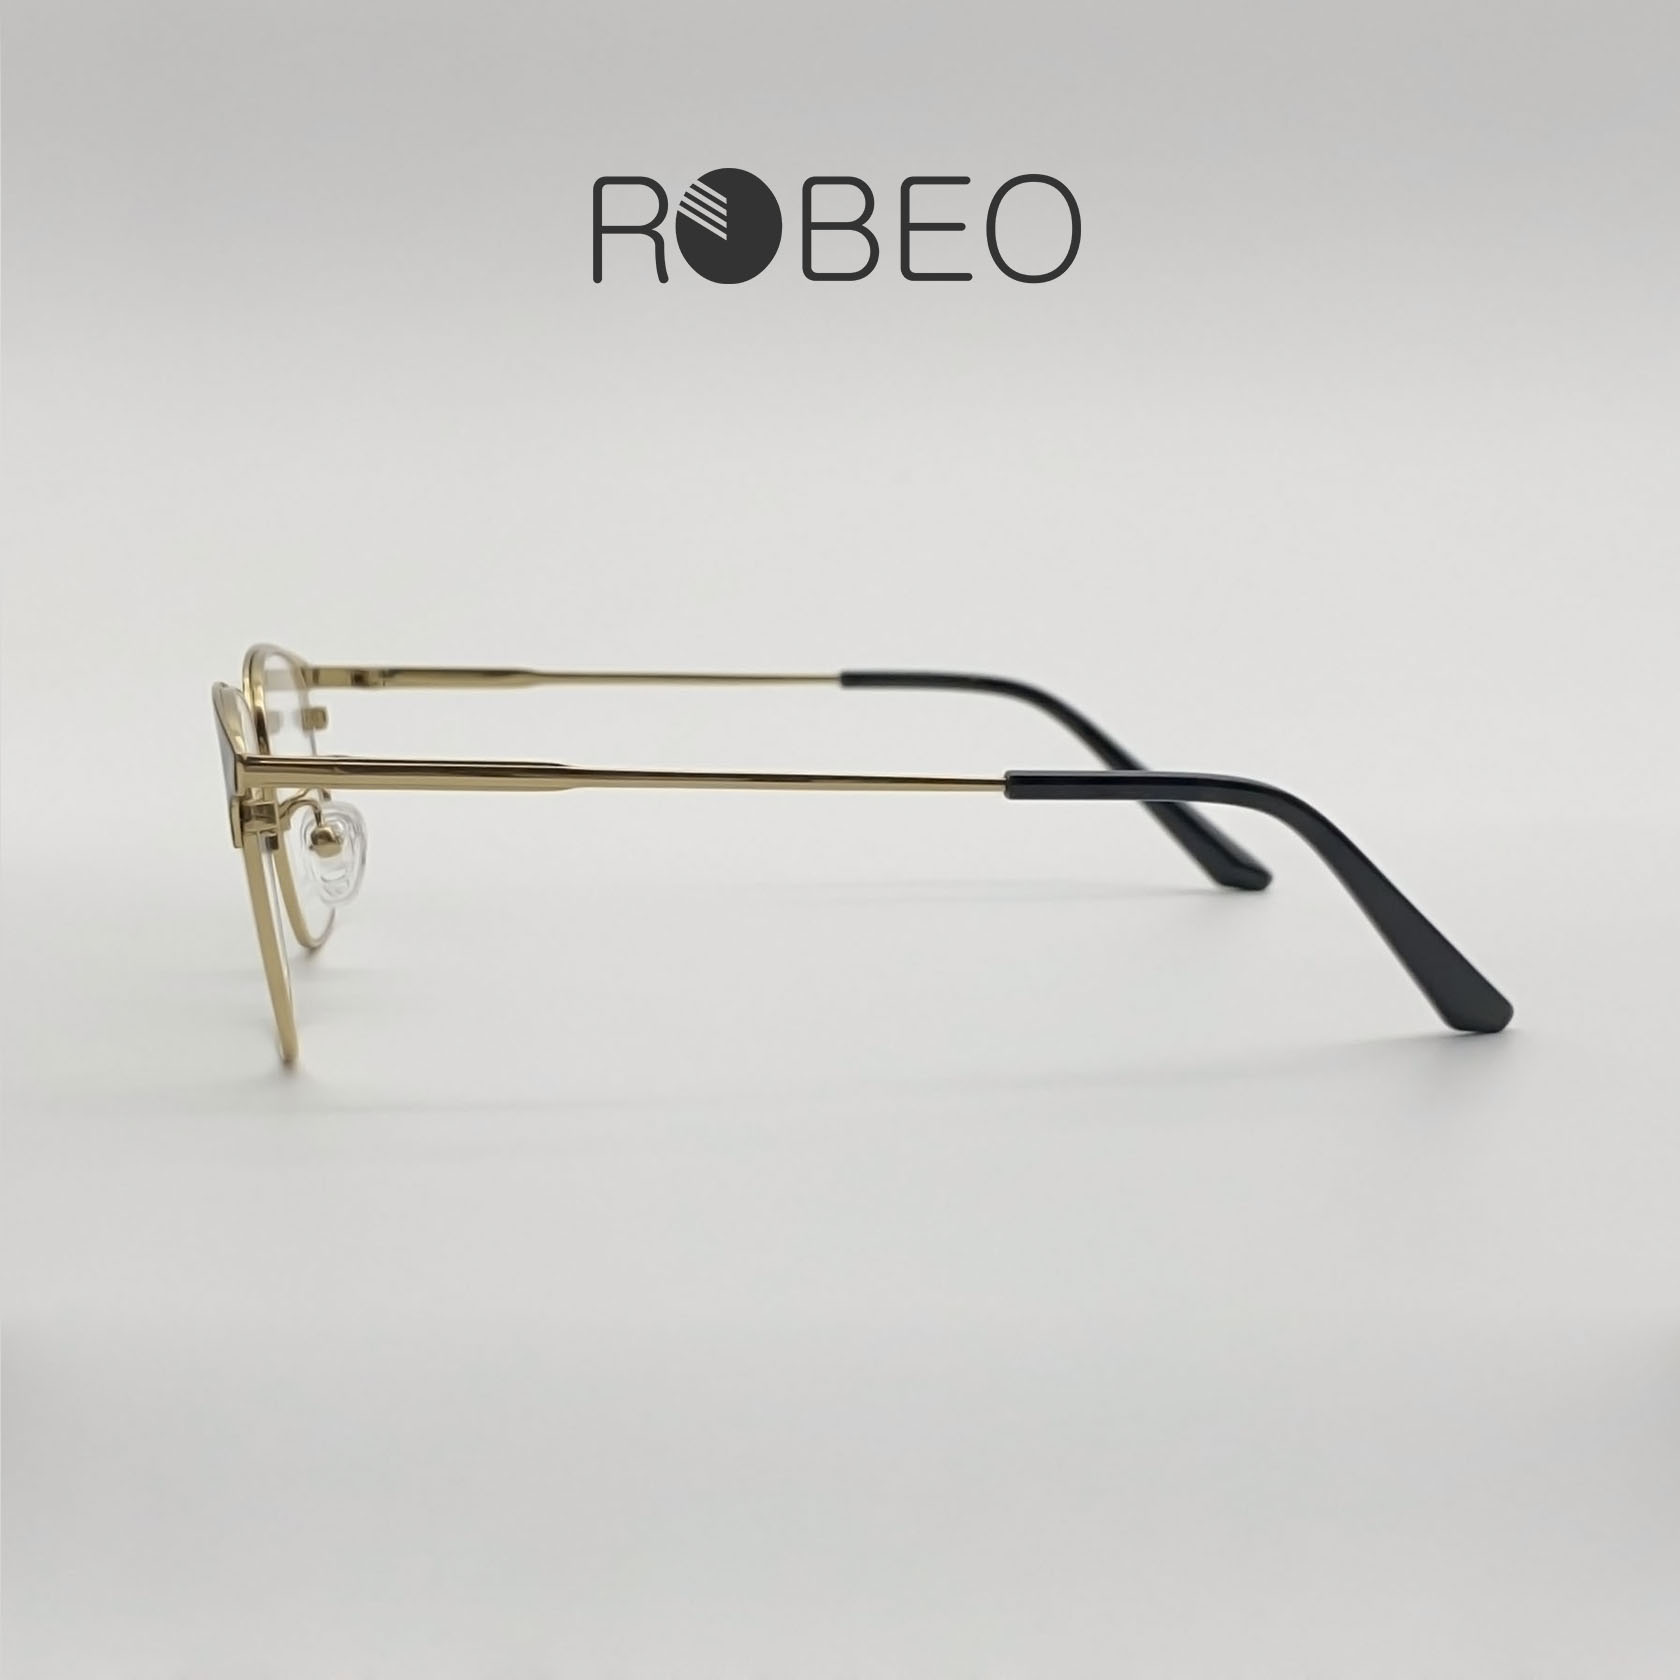 Gọng kính cận chân B-Titanium ROBEO - R0434, khung kim loại mỏng nhẹ - Fullbox